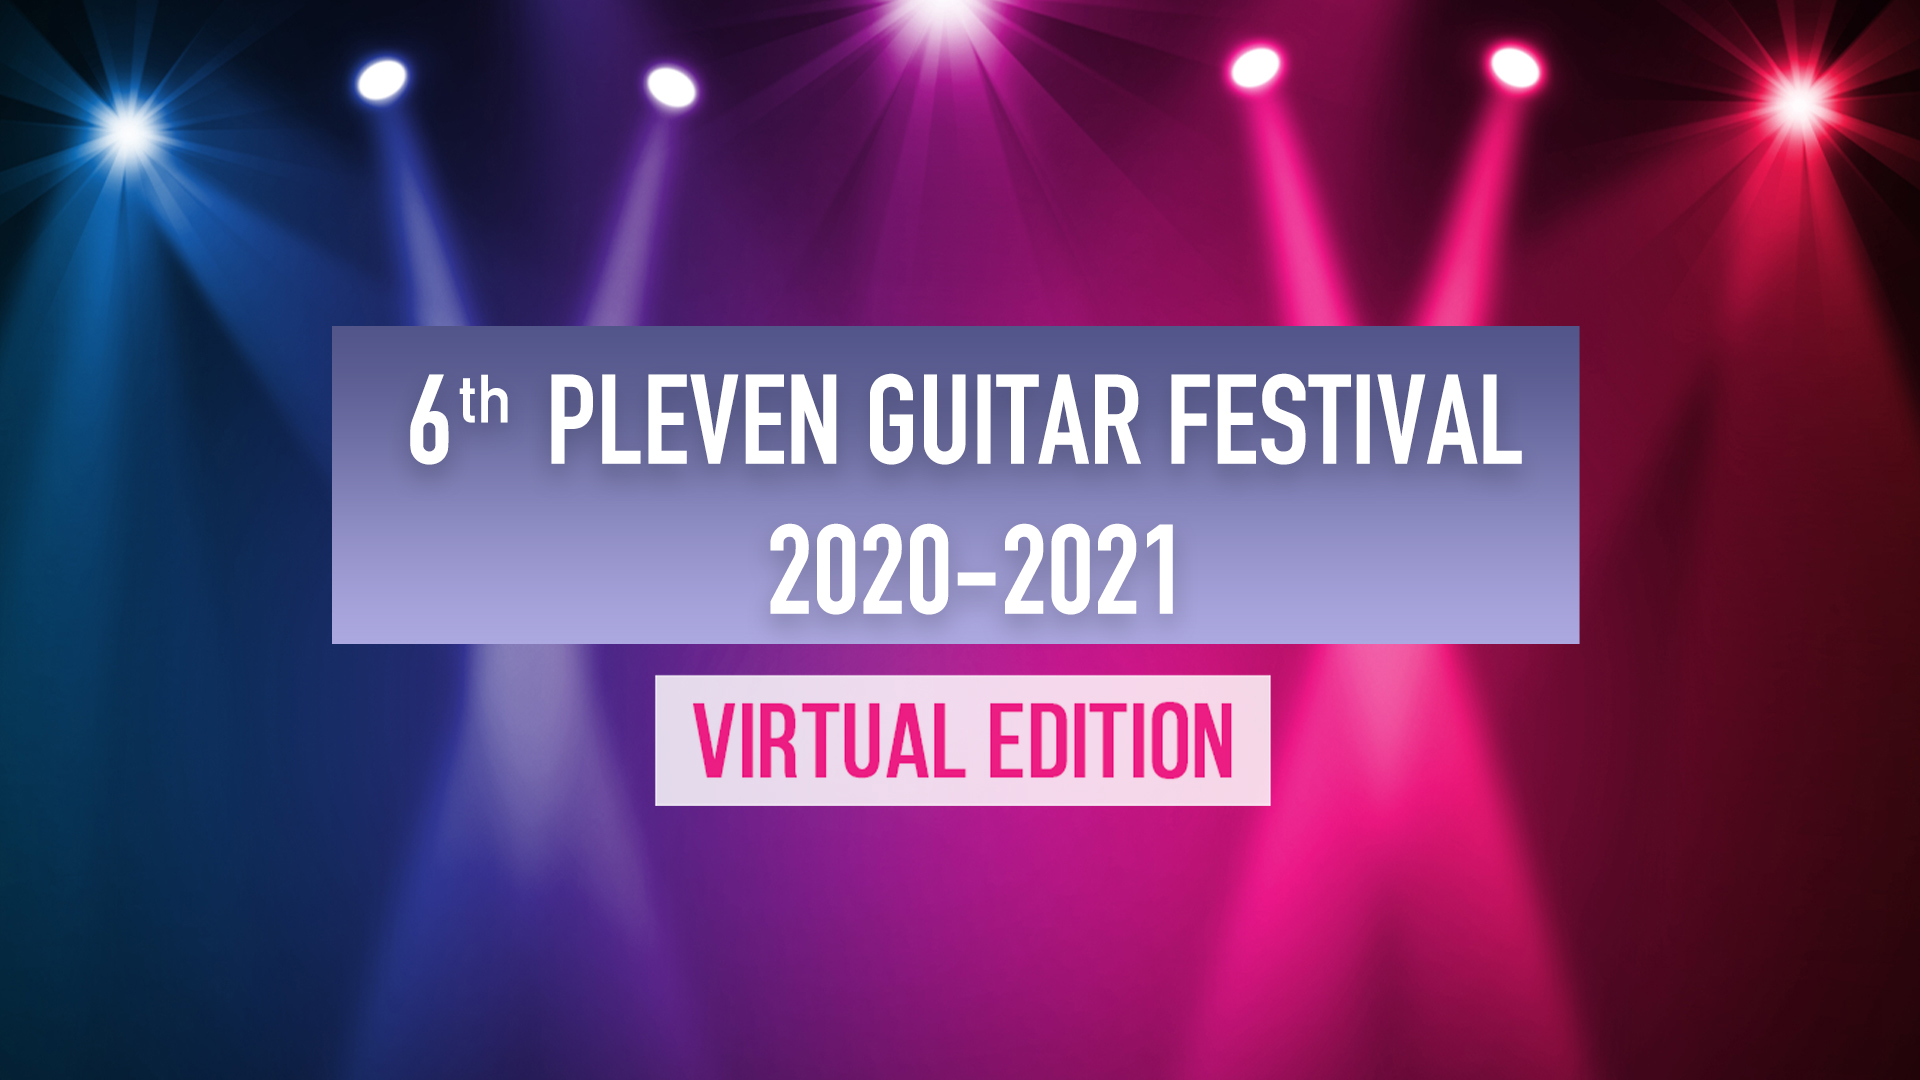 6th Pleven Guitar Festival 2020-2021